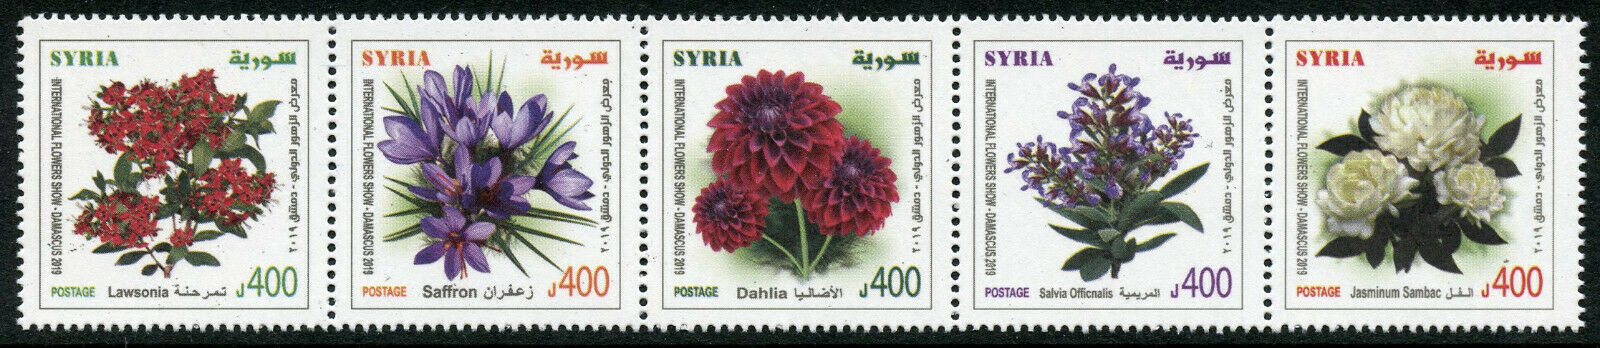 Syria 2019 MNH Flowers Lawsonia Dahlia Jasmine 5v Strip Flora Nature Stamps